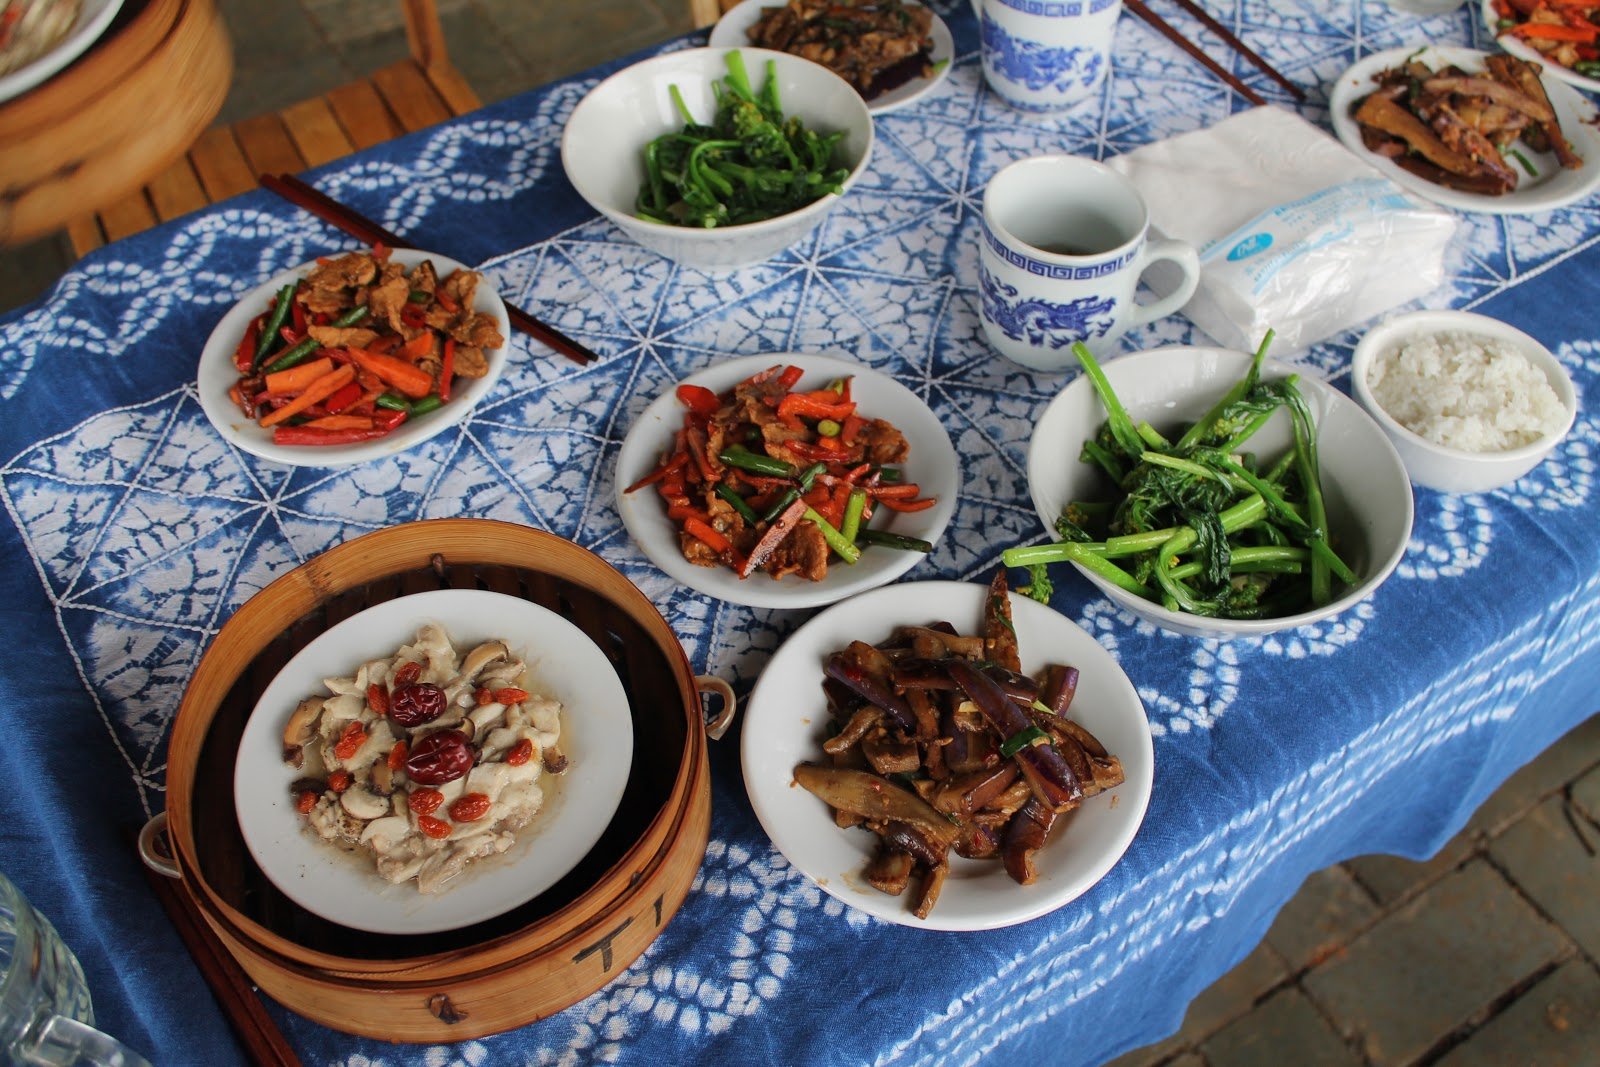 Yangshuo cooking class, Chinese cooking class, Yangshuo, China